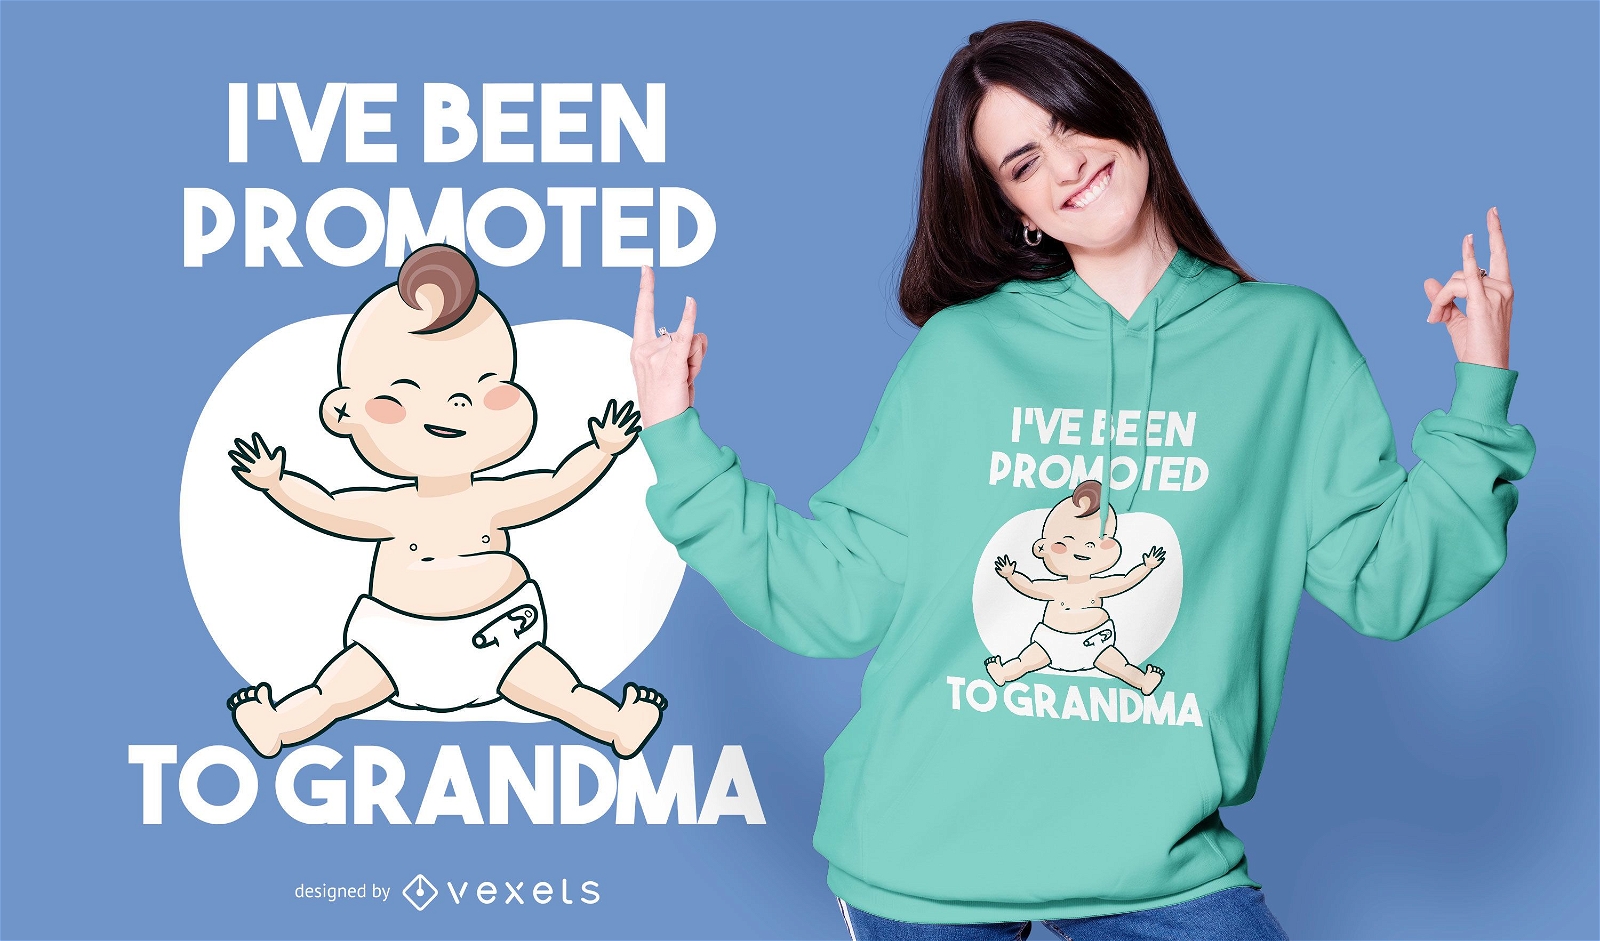 Baby grandma quote t-shirt design